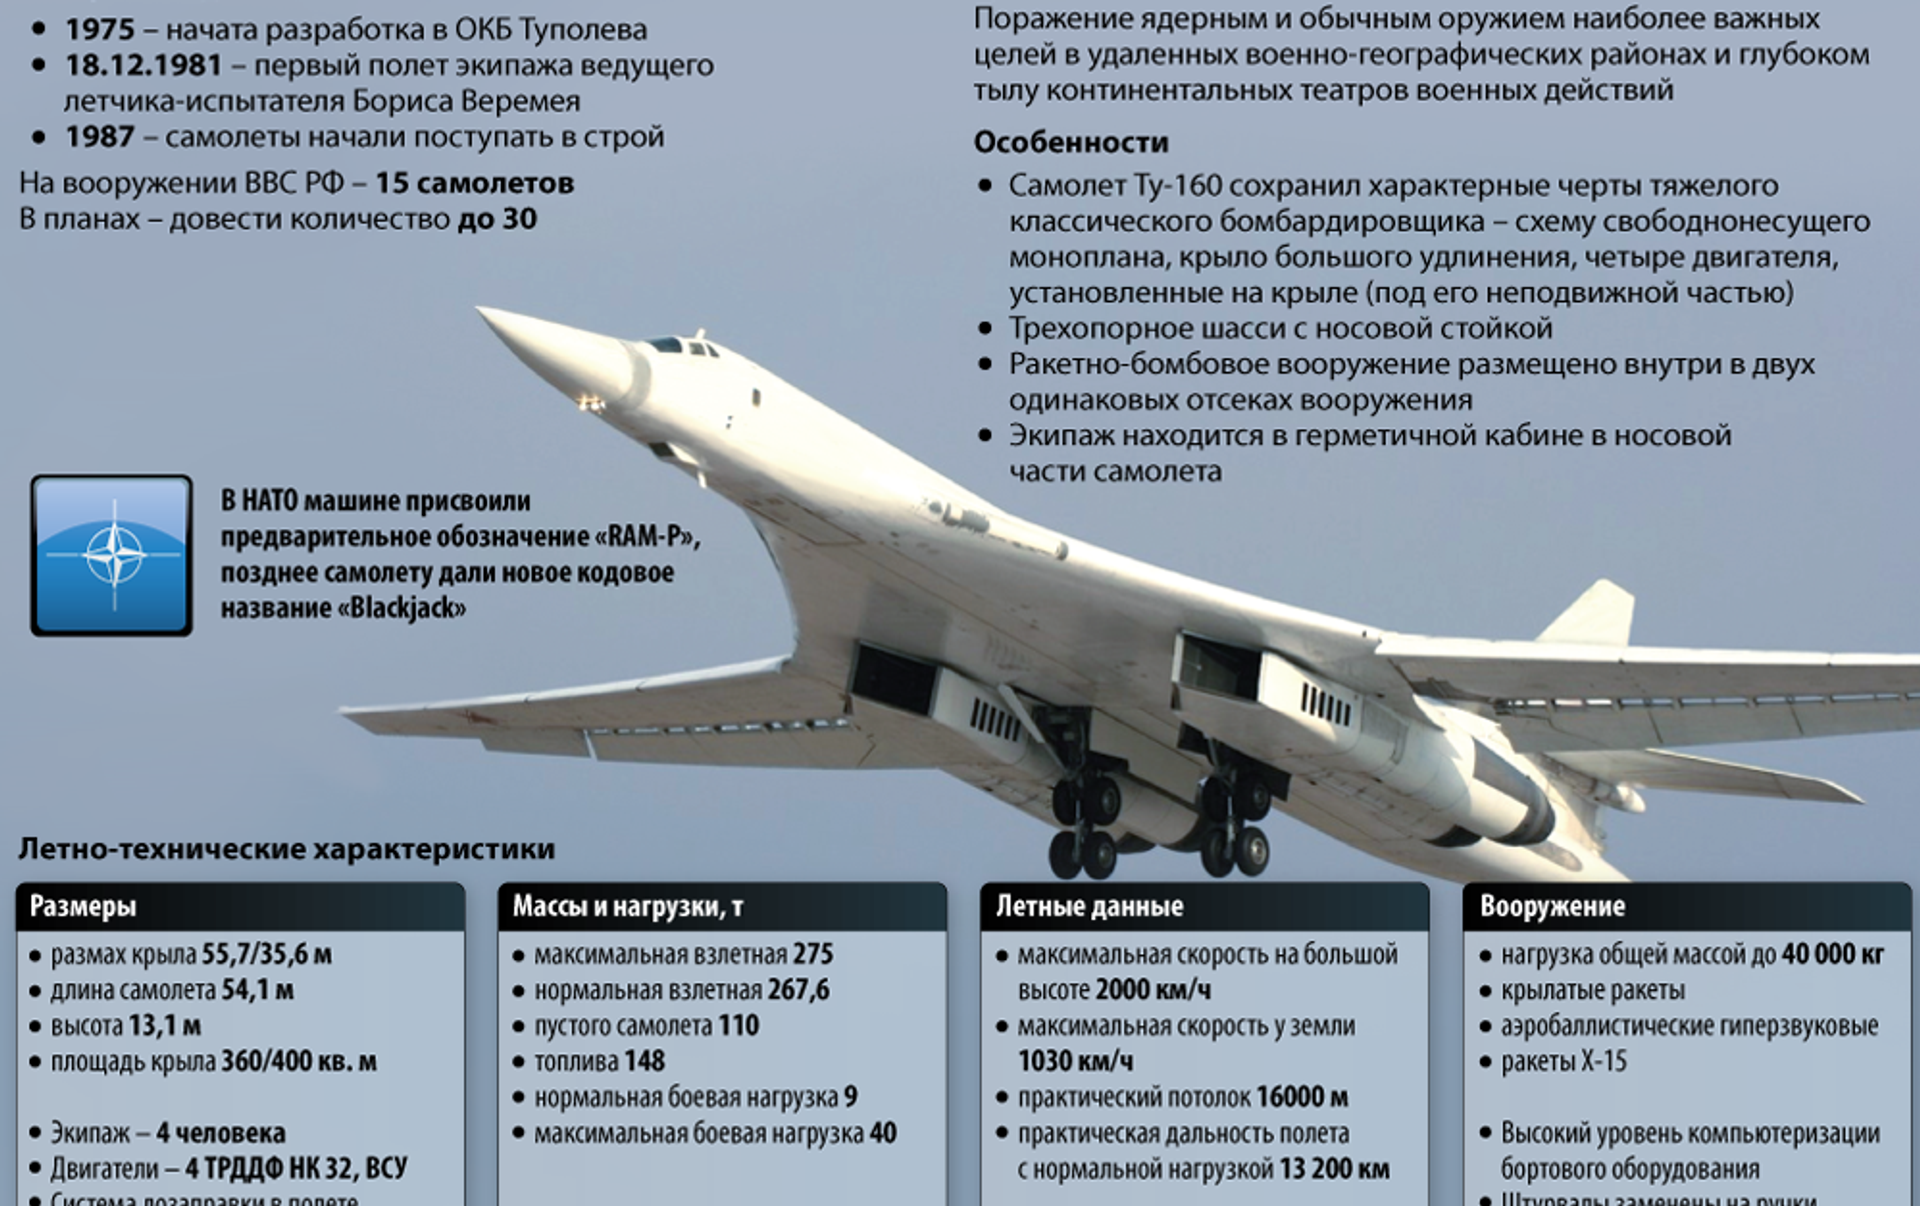 Скорость самолета лебедь. Белый лебедь самолет ту 160 характеристики. Технические характеристики самолета ту 160 белый лебедь. Стратегический бомбардировщик ту-160 белый лебедь. Ту-160 сверхзвуковой самолёт.